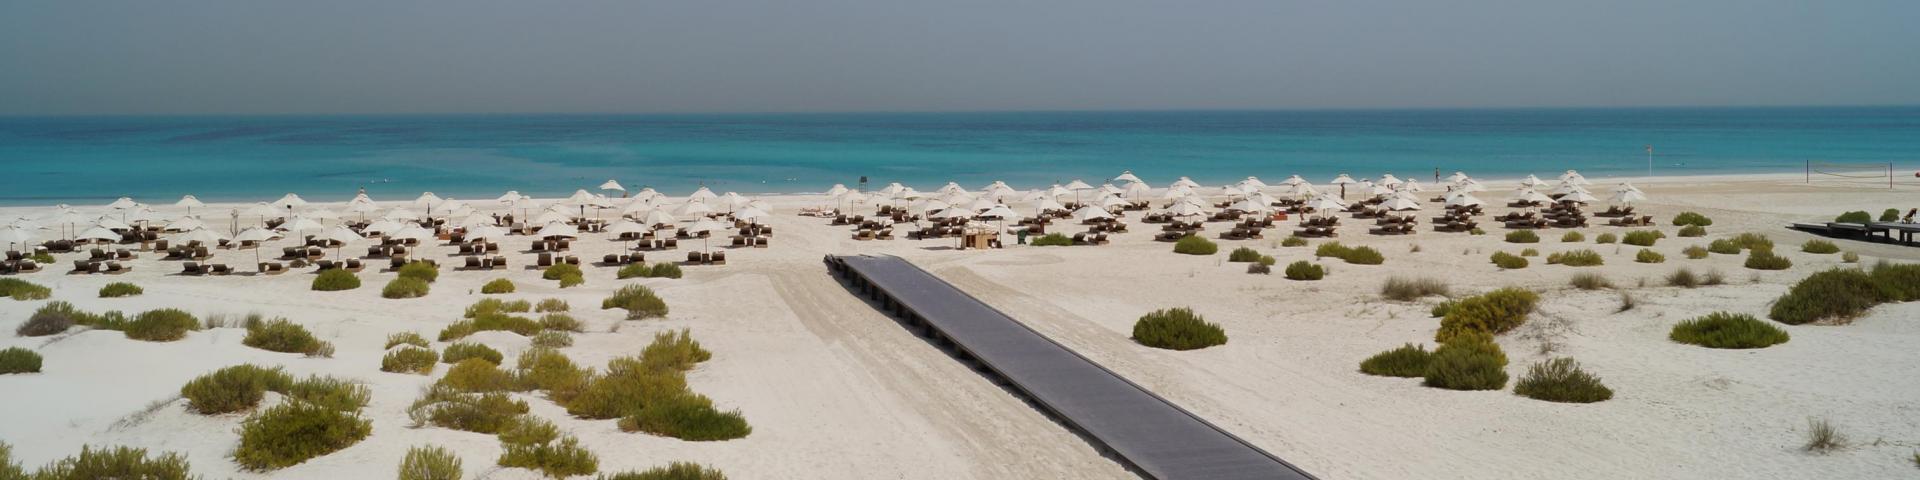 Abu Dhabi i Dubaj - plażowe wakacje z metropolią w tle 